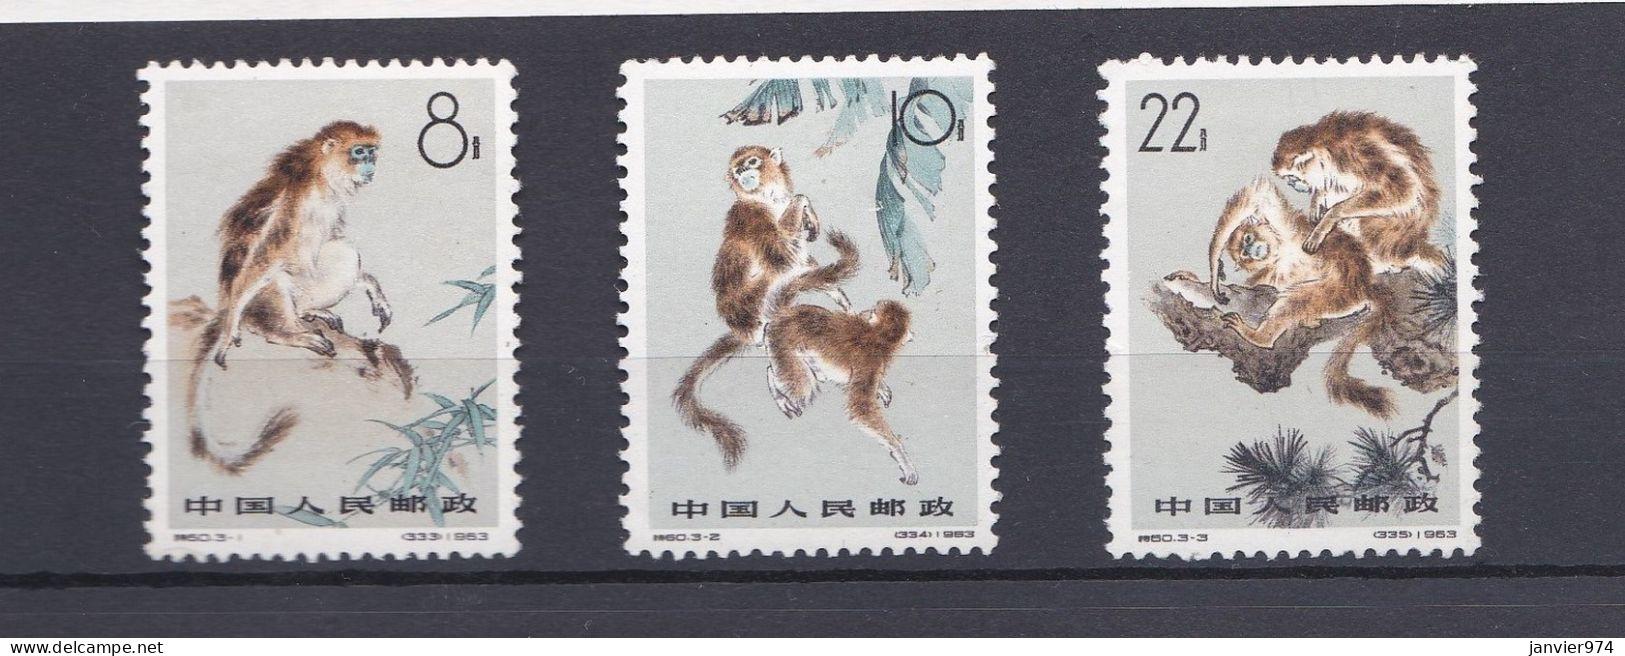 Chine 1963 La Série Complète 741 à 743, Monkeys Singe. 3 Timbres Neufs  Scan Recto Verso - Nuevos